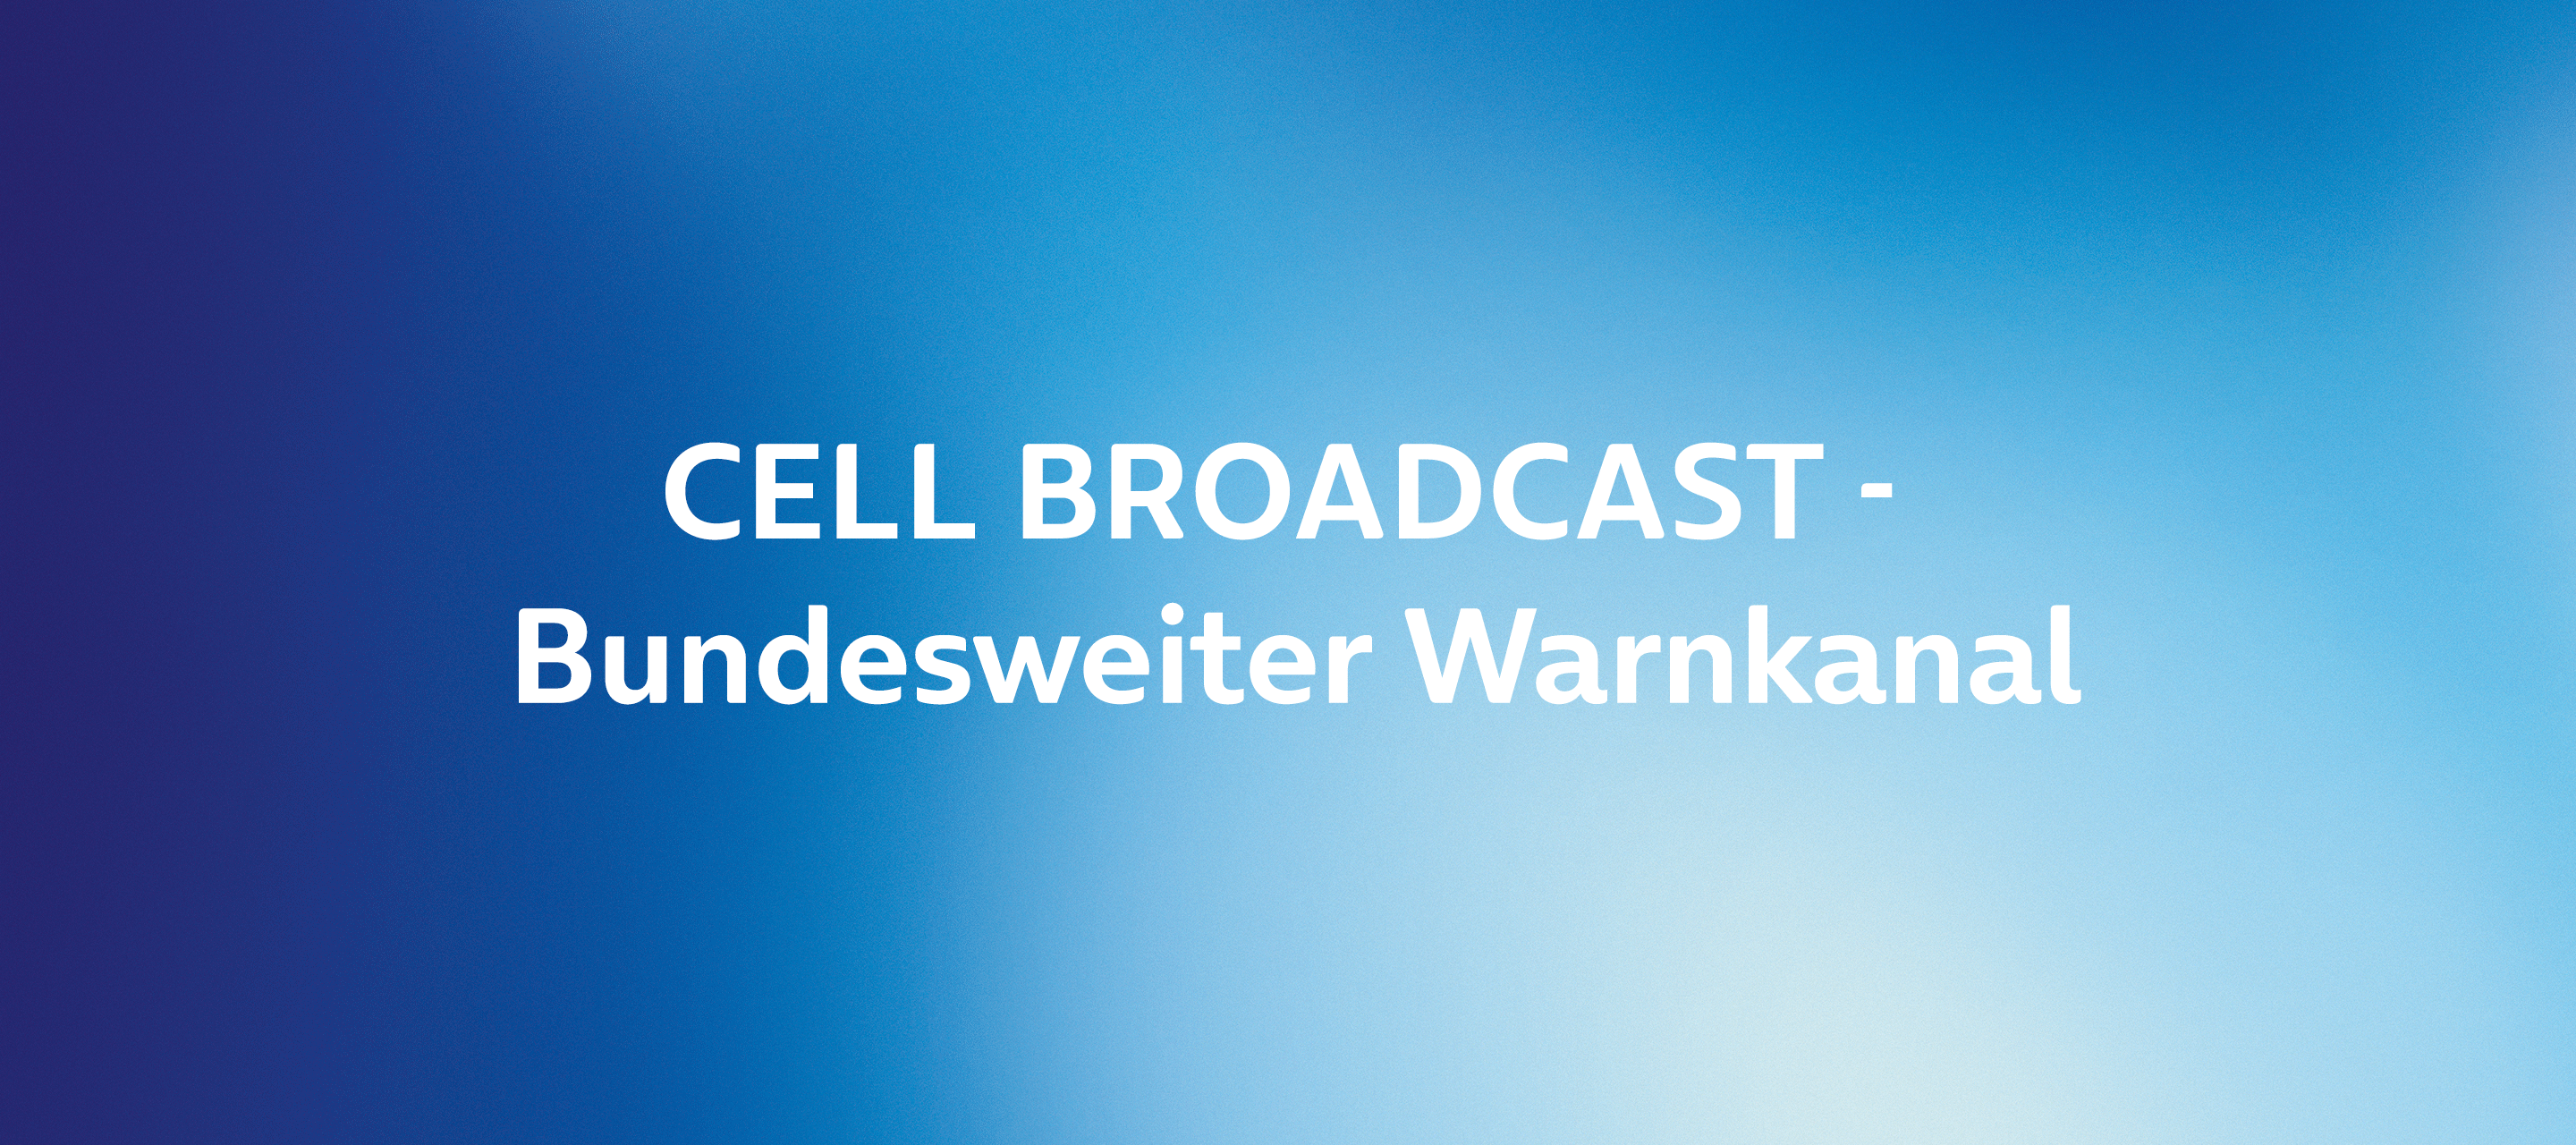 Bundesweiter Warntag am 08. Dezember 2022 mit Cell Broadcast